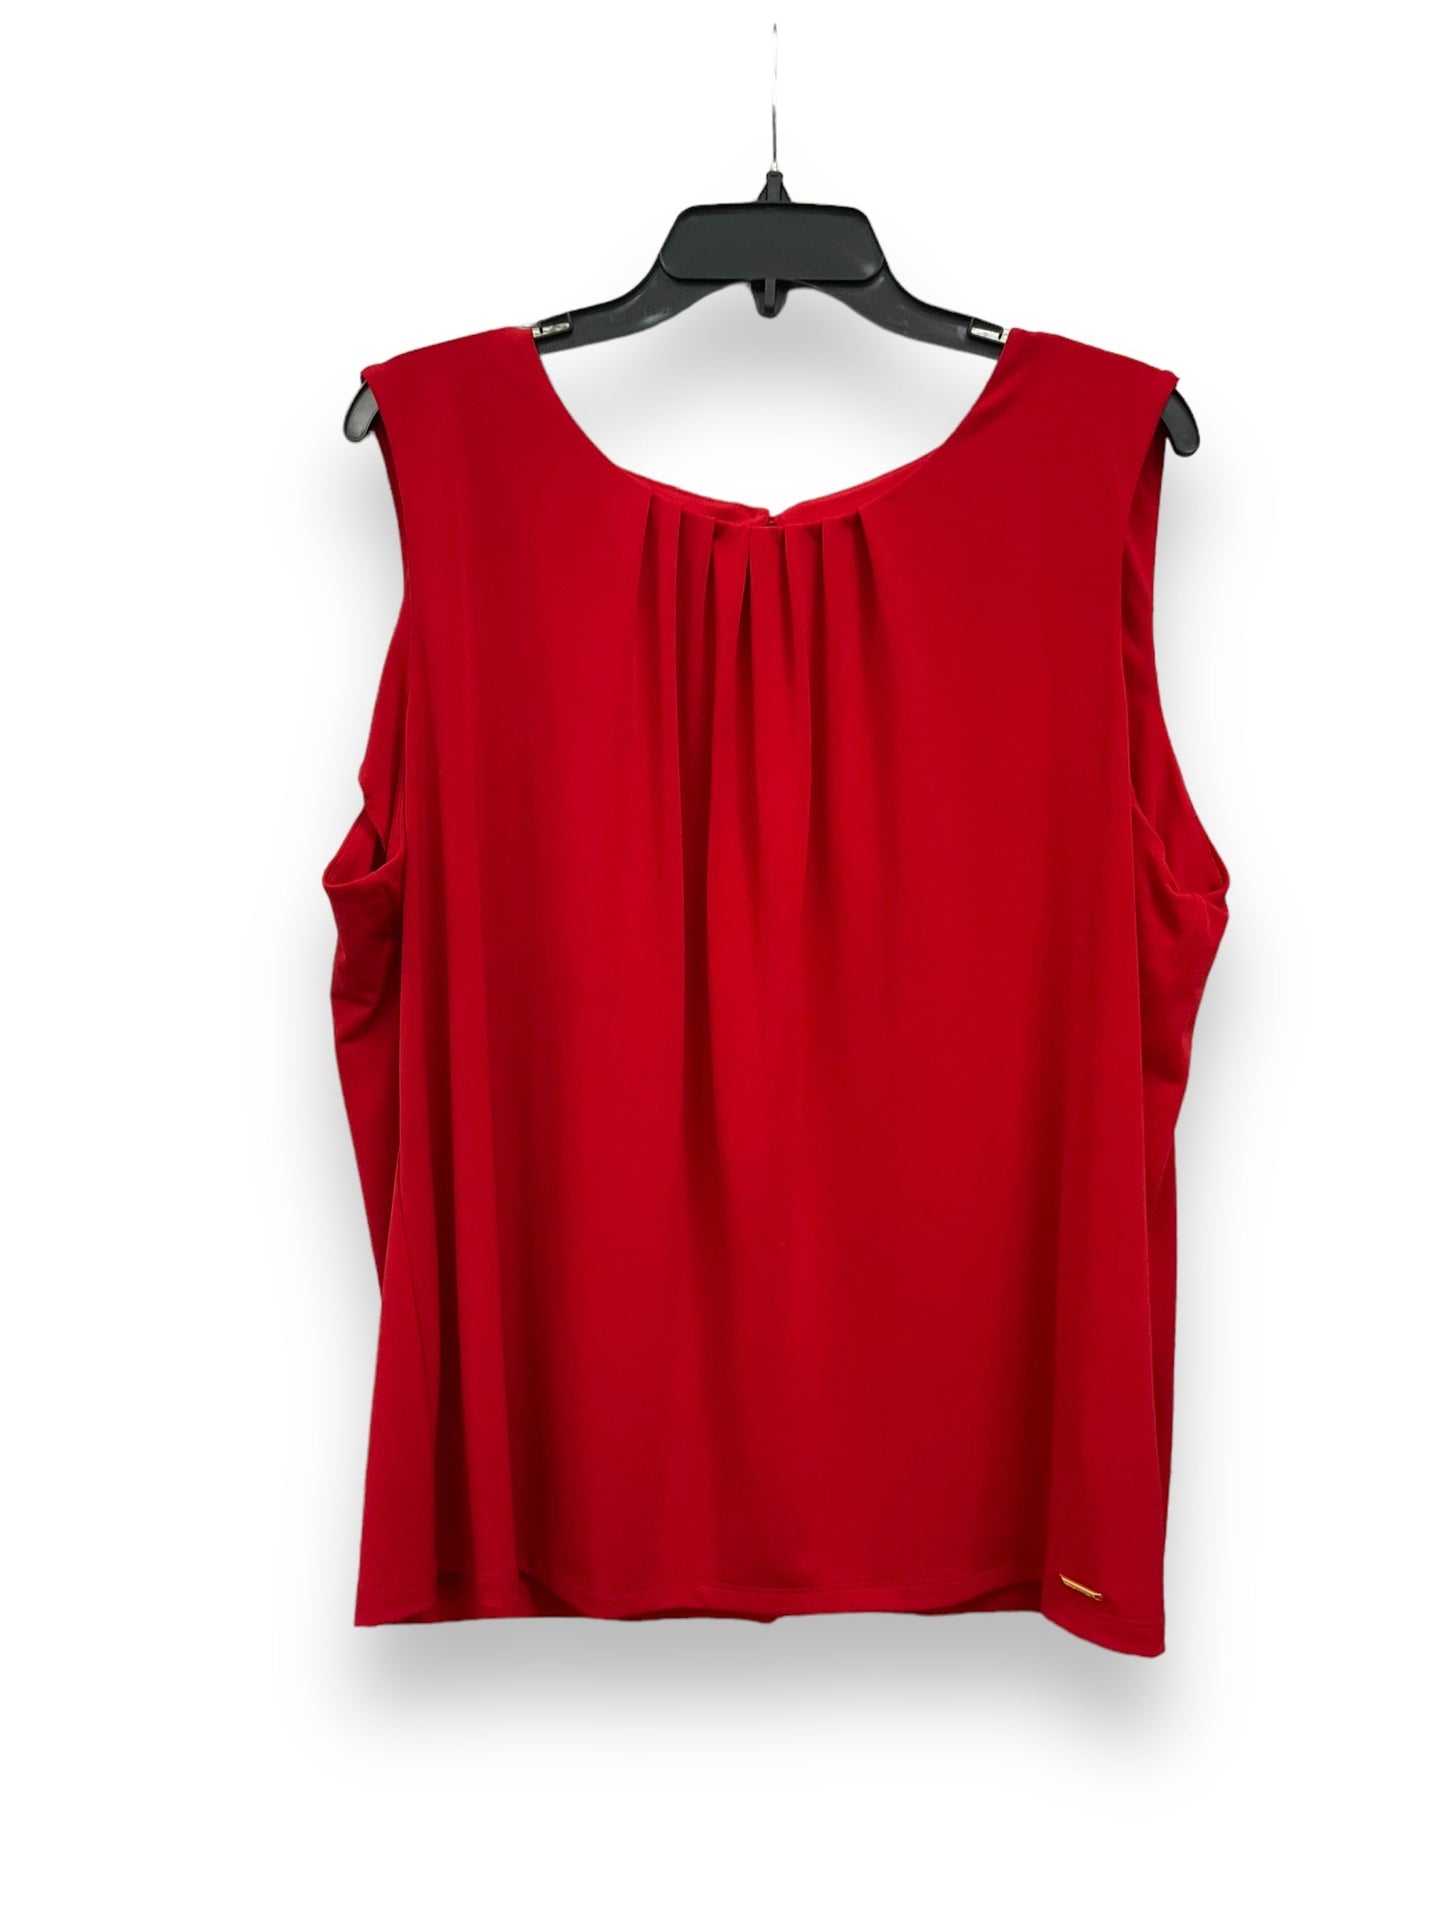 Red Blouse Sleeveless Calvin Klein, Size 2x